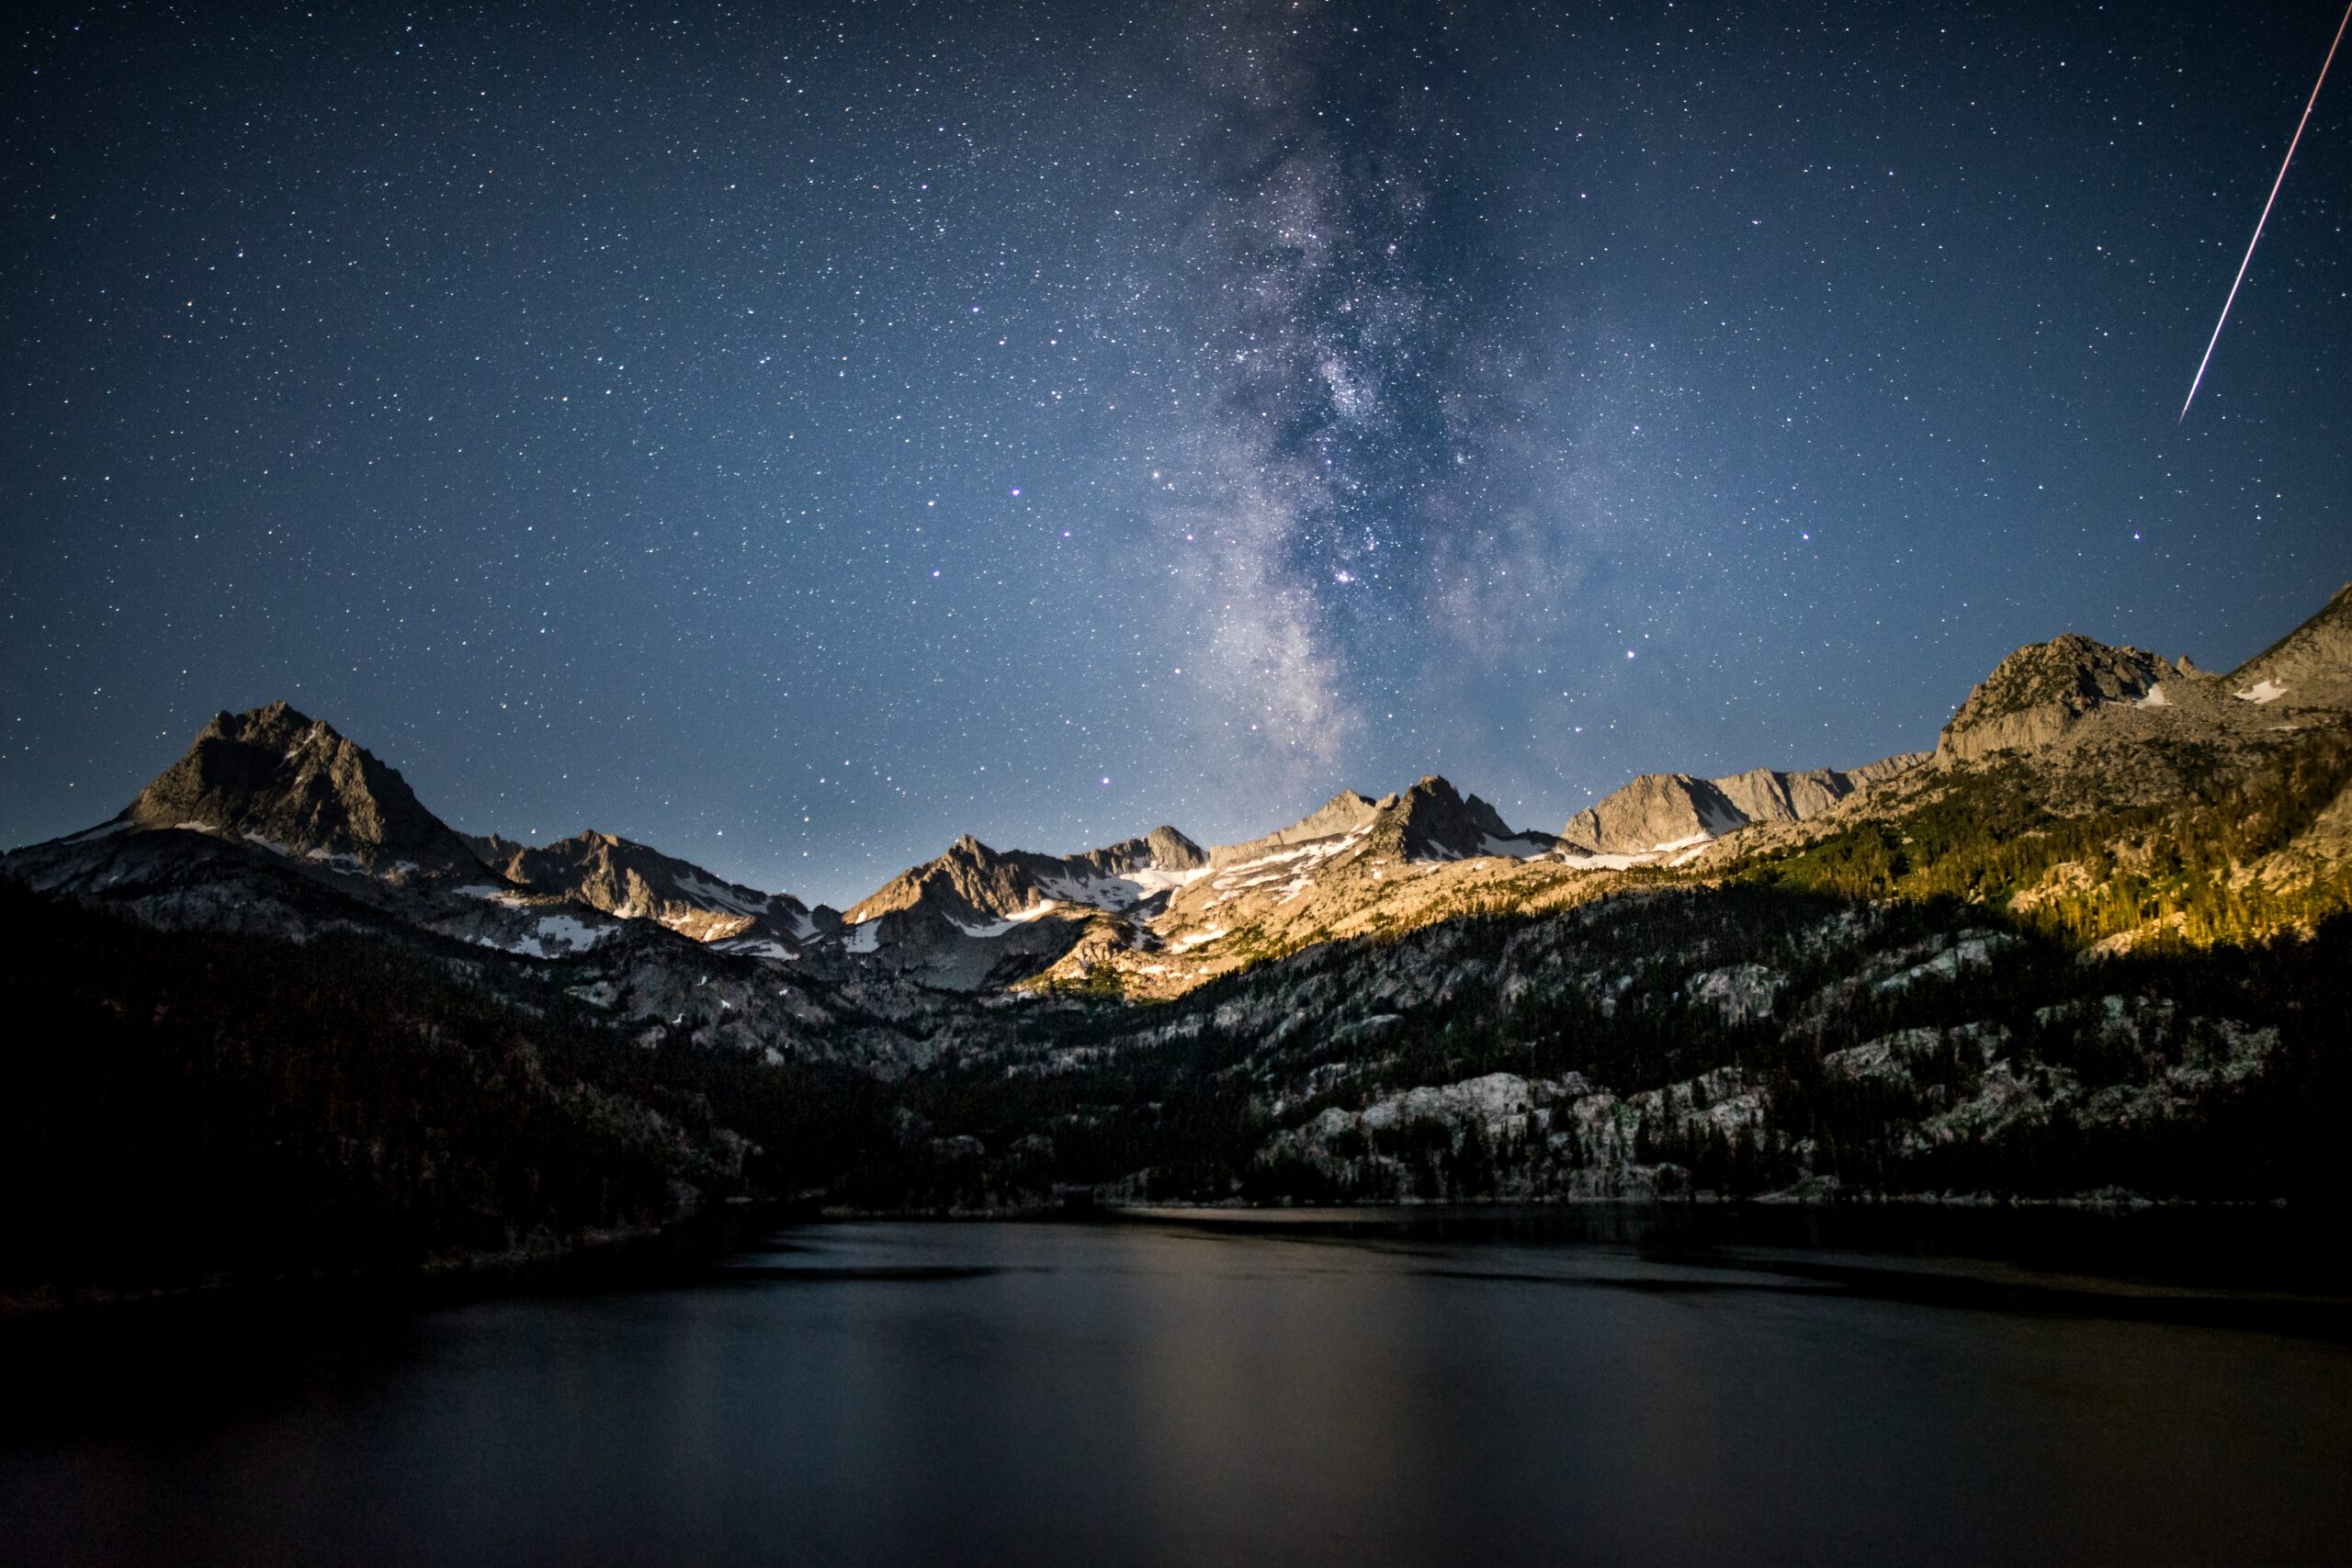 Fotos noturnas incríveis com 5 dicas simples